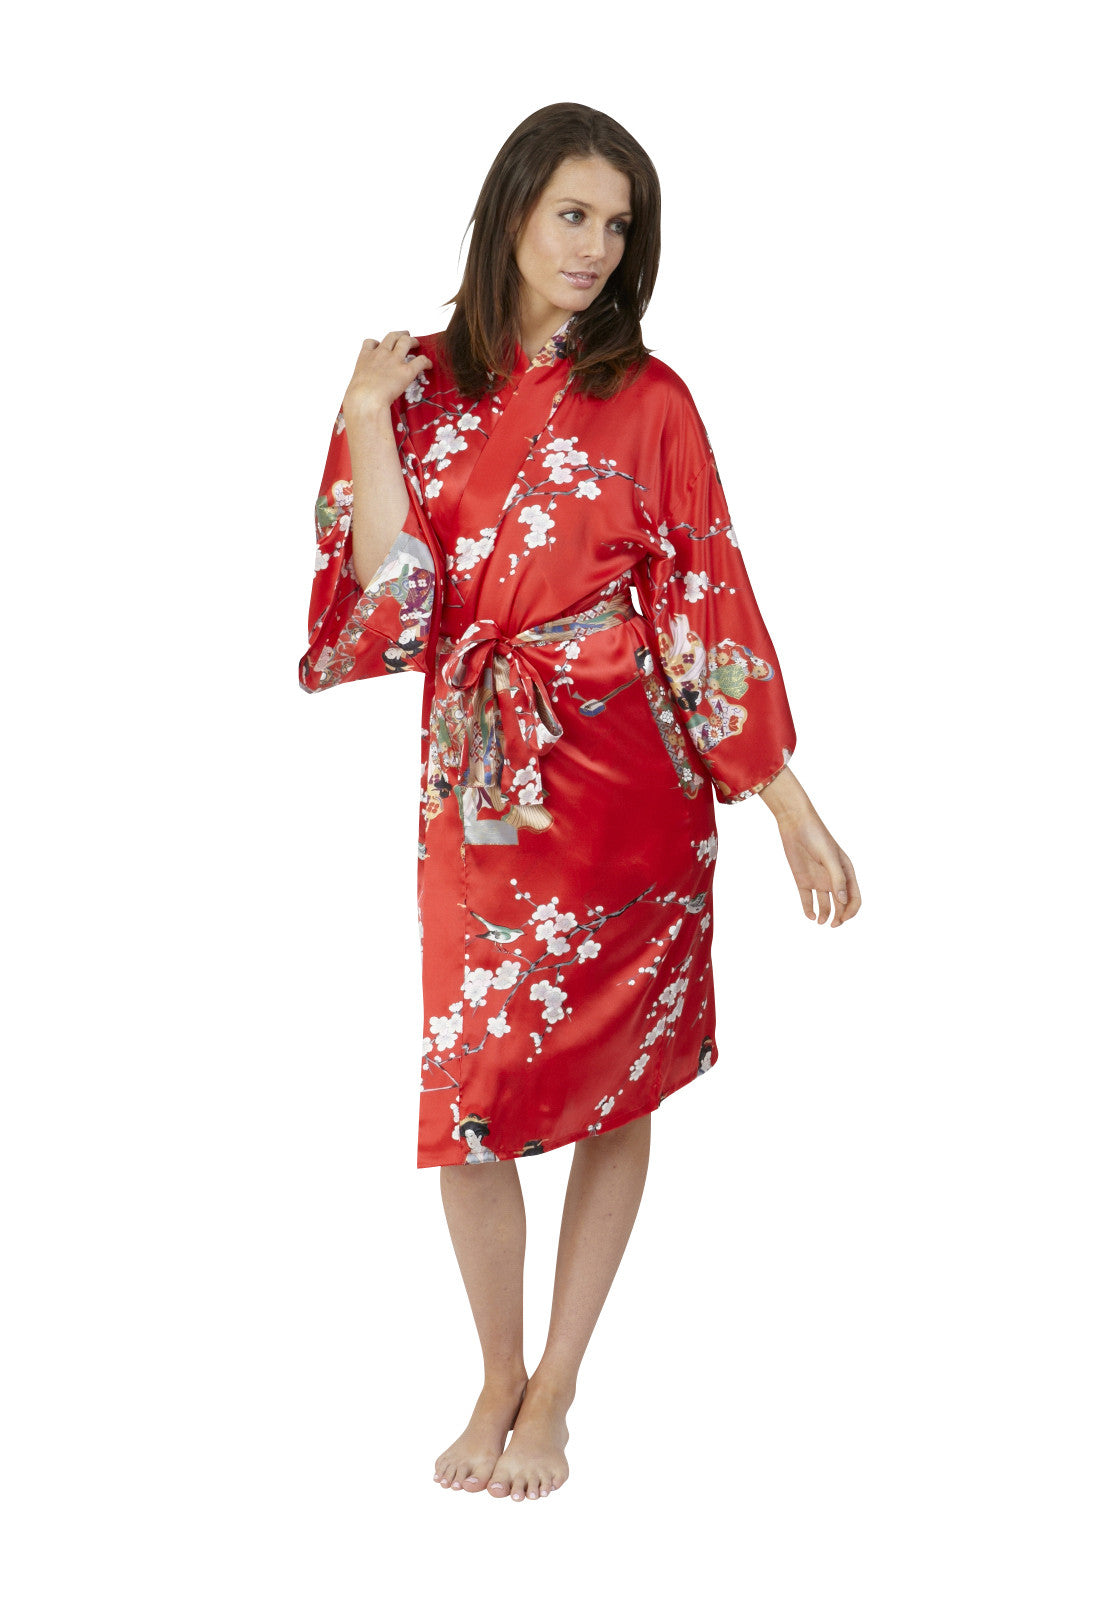 Sexy kimono robes for women – Beautiful Robes